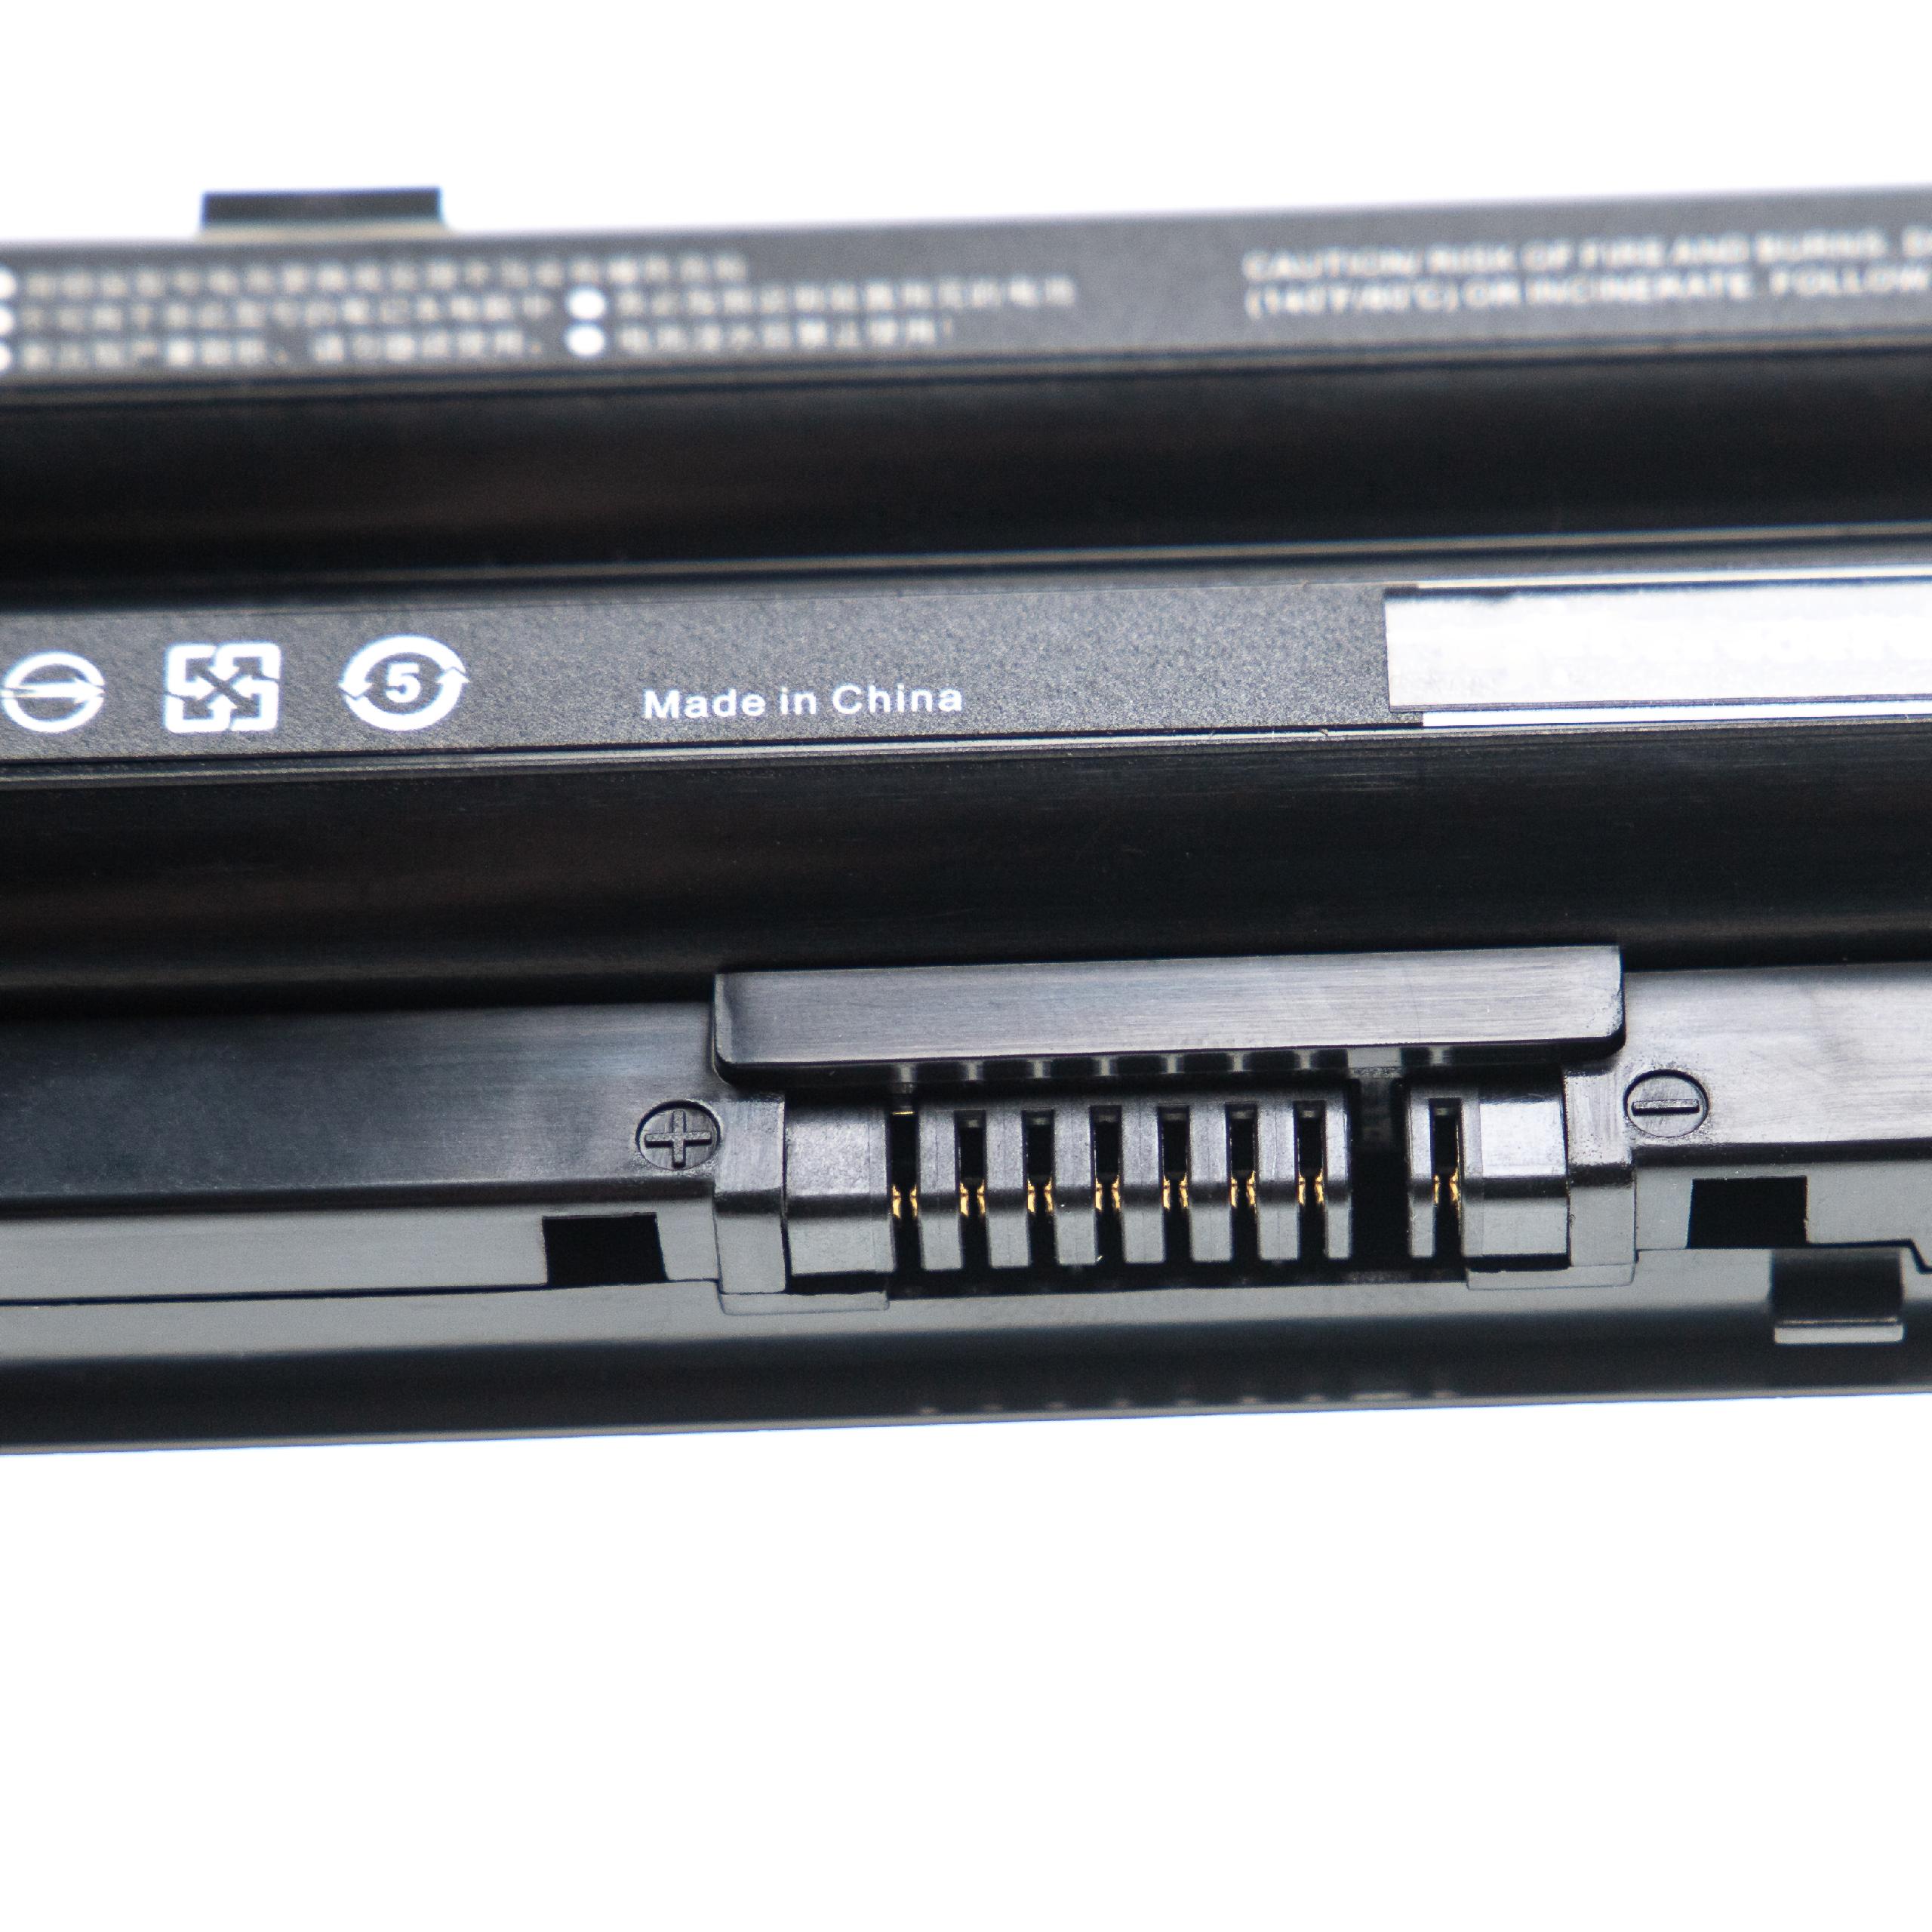 Batterie remplace Fujitsu BPS229, FMVNBP227A, BPS231 pour ordinateur portable - 4400mAh 10,8V Li-ion, noir